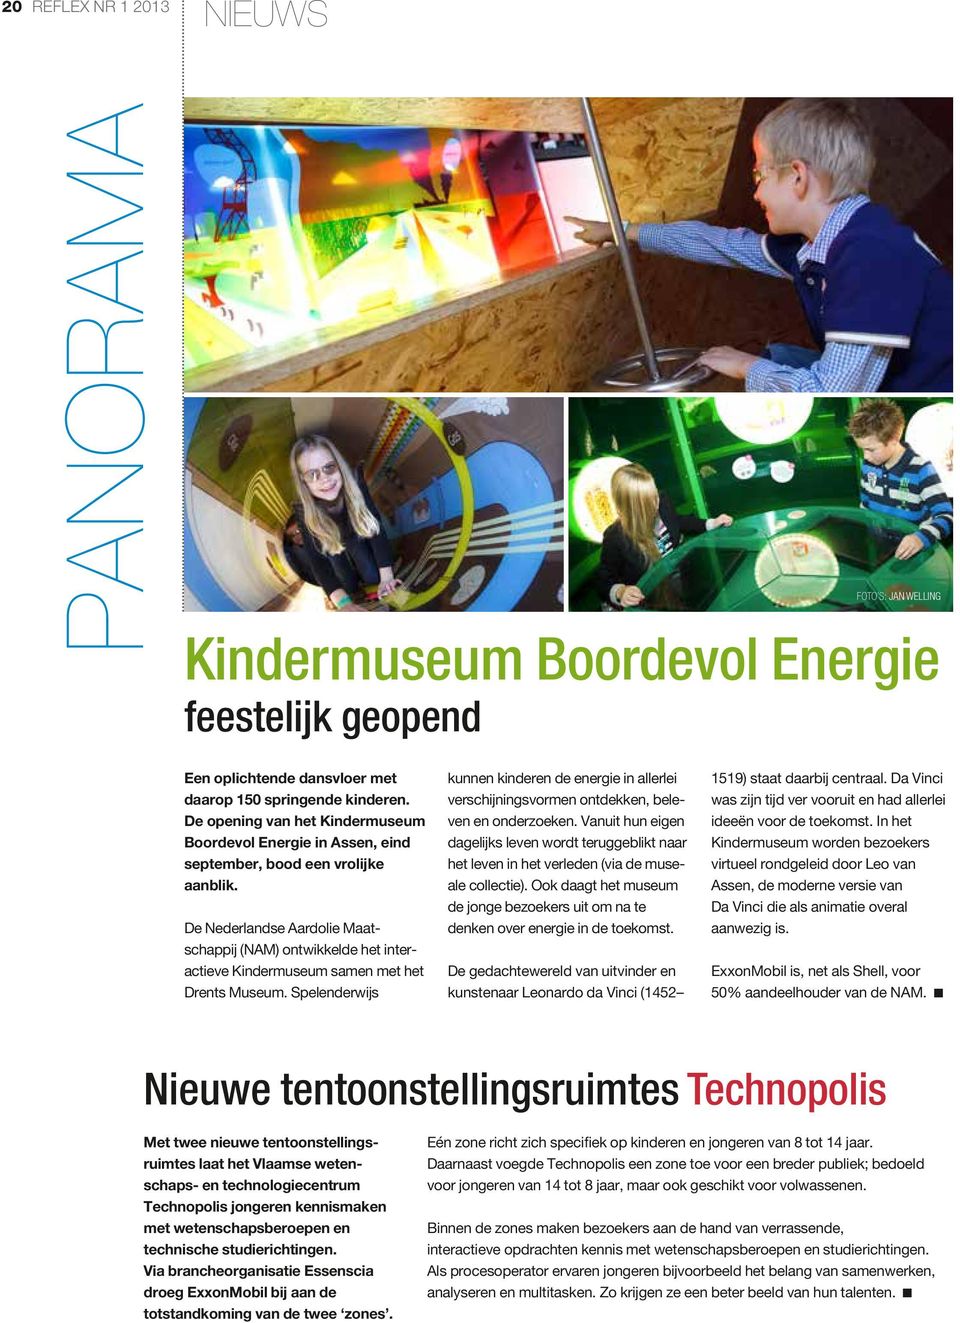 De Nederlandse Aardolie Maatschappij (NAM) ontwikkelde het interactieve Kindermuseum samen met het Drents Museum.